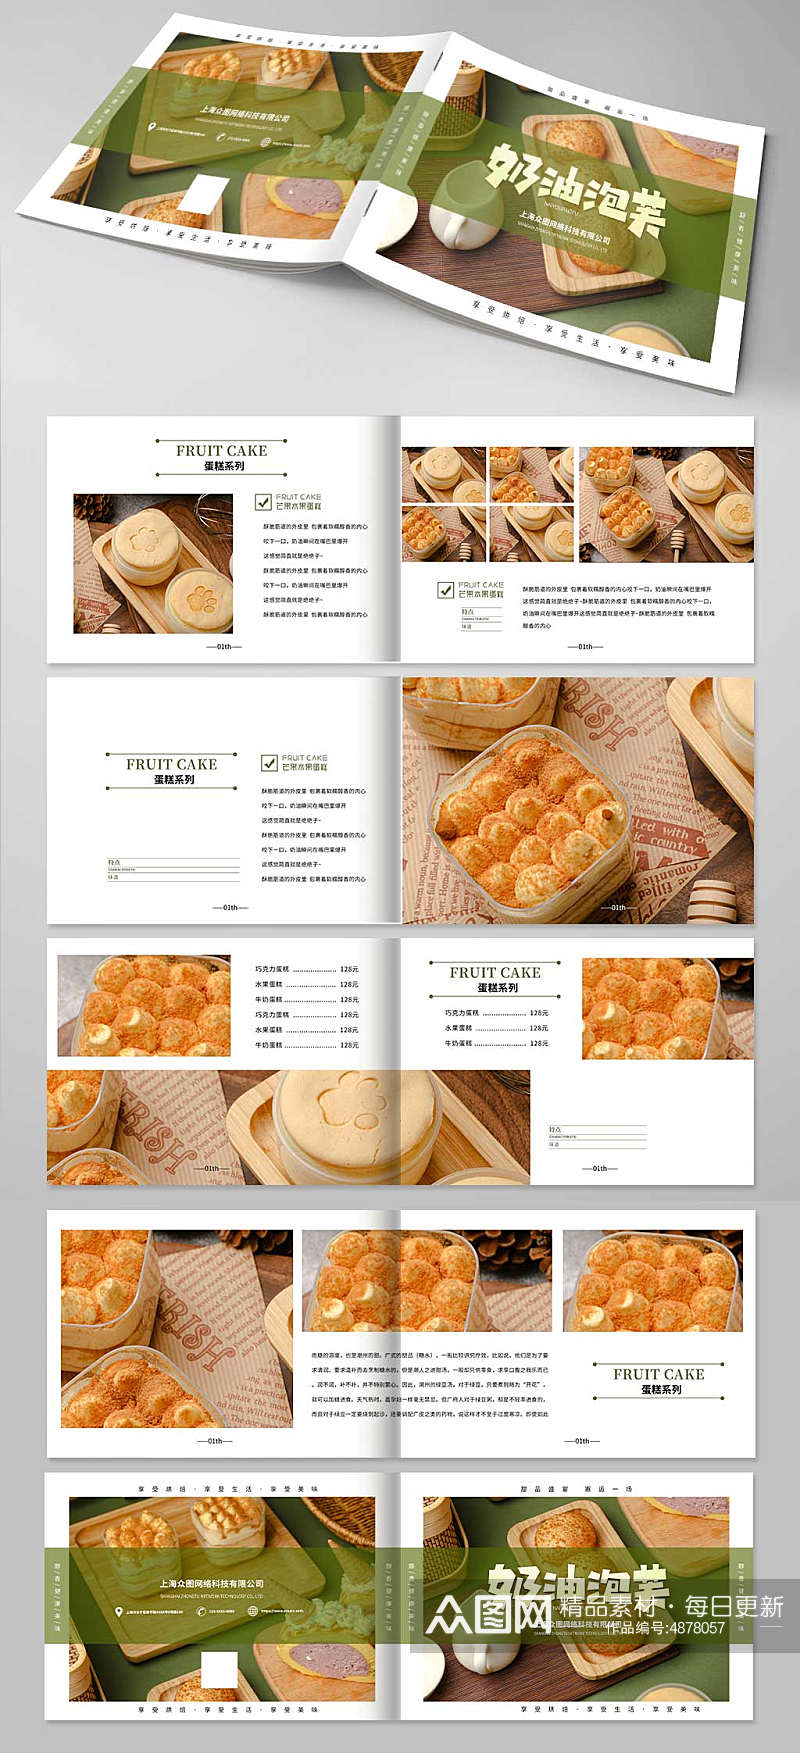 清新甜点甜品蛋糕下午茶美食宣传册画册素材